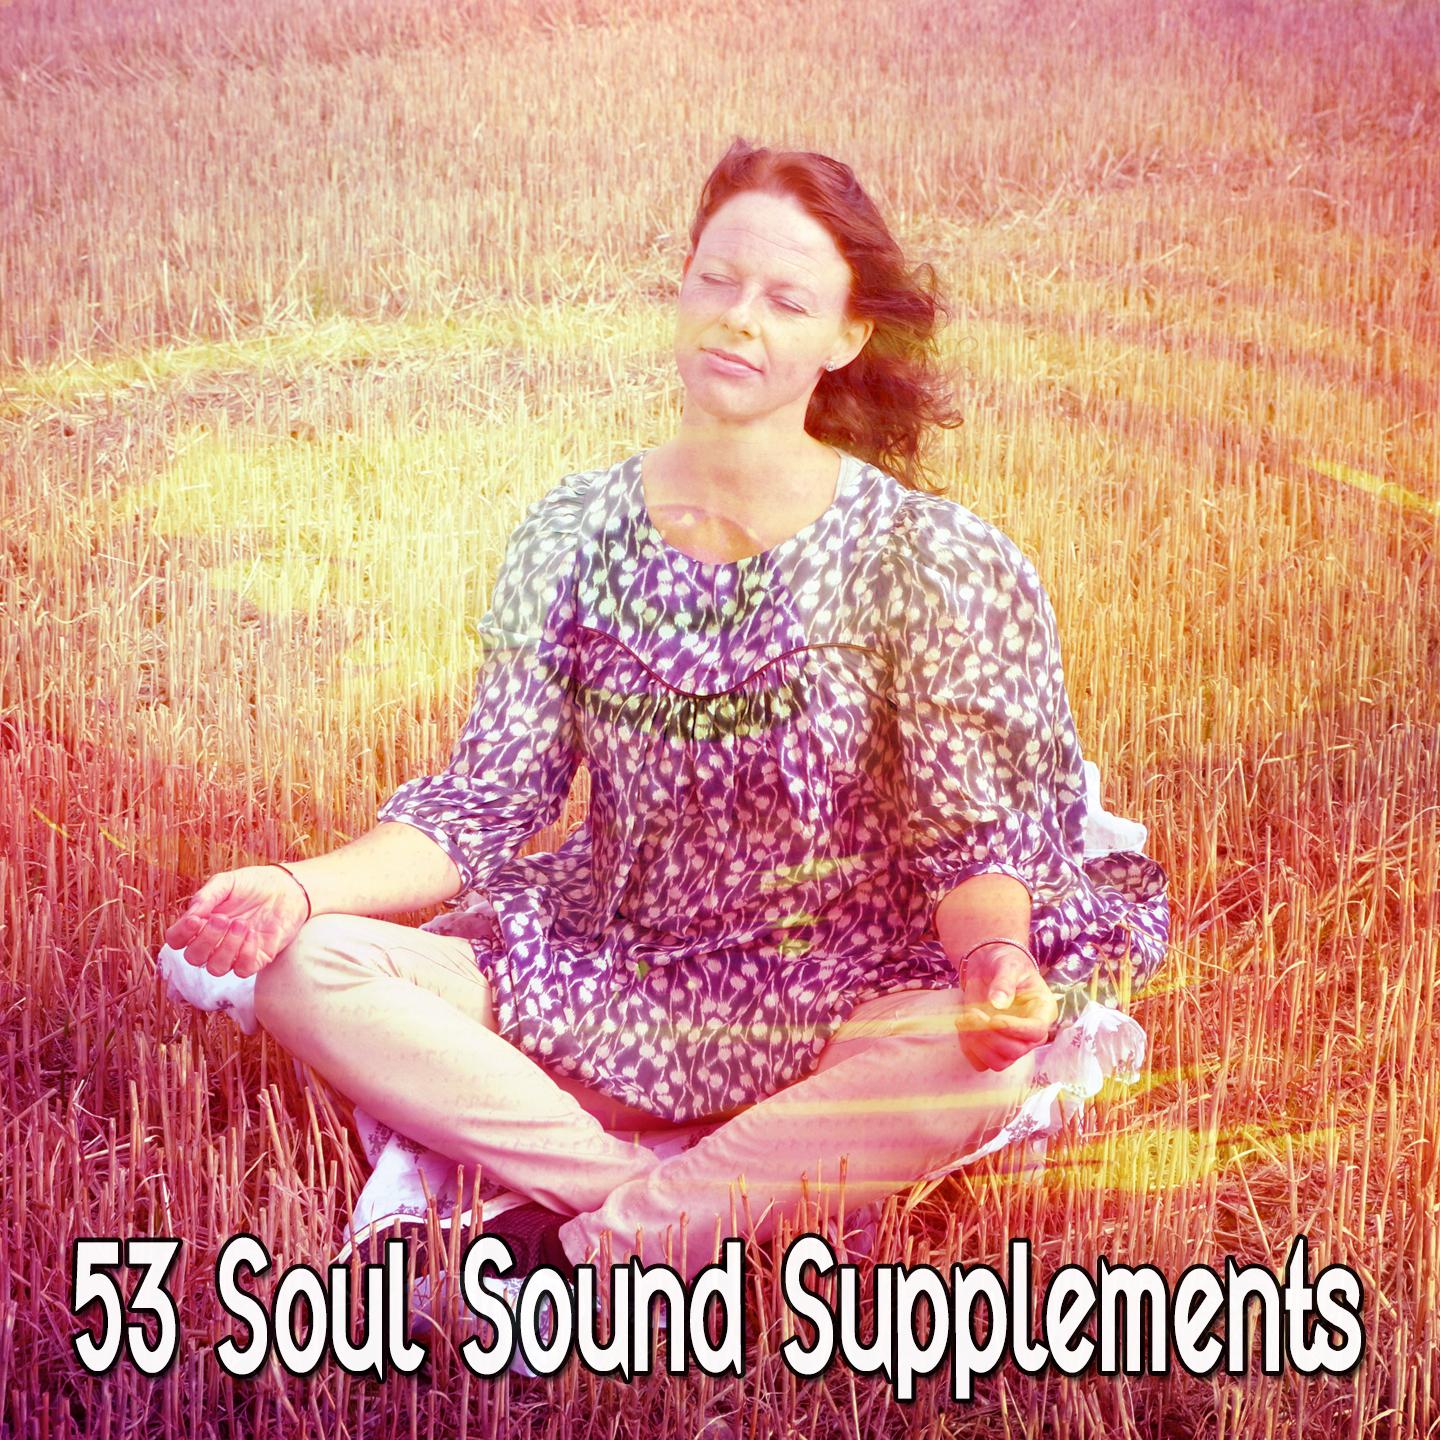 53 Soul Sound Supplements